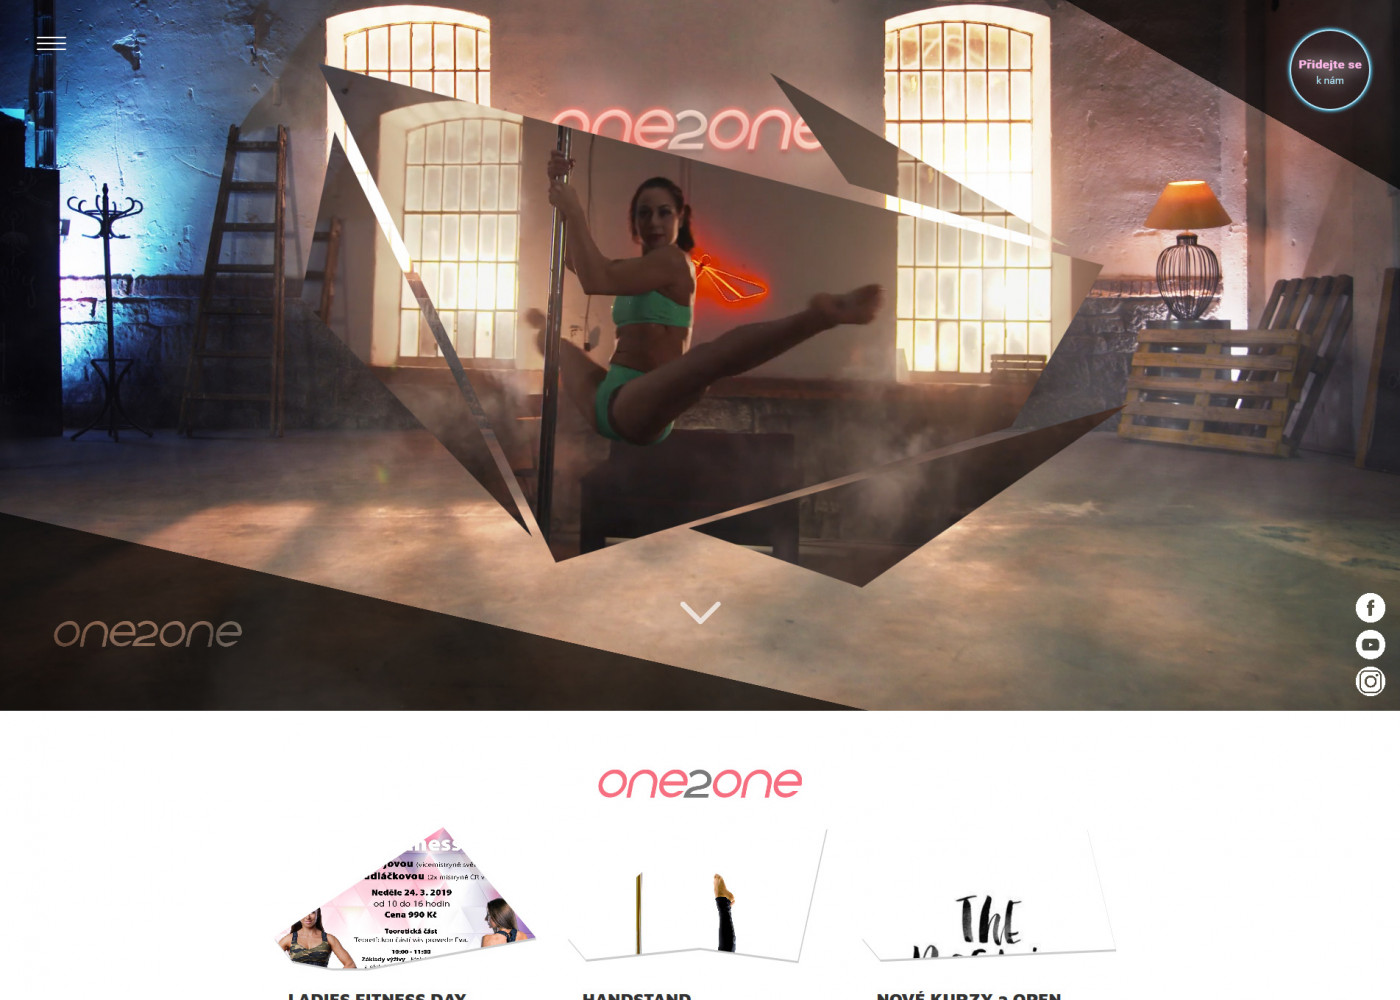 Tvorba nového webu one2onestudio.cz - Porovnání, nová verze  #1